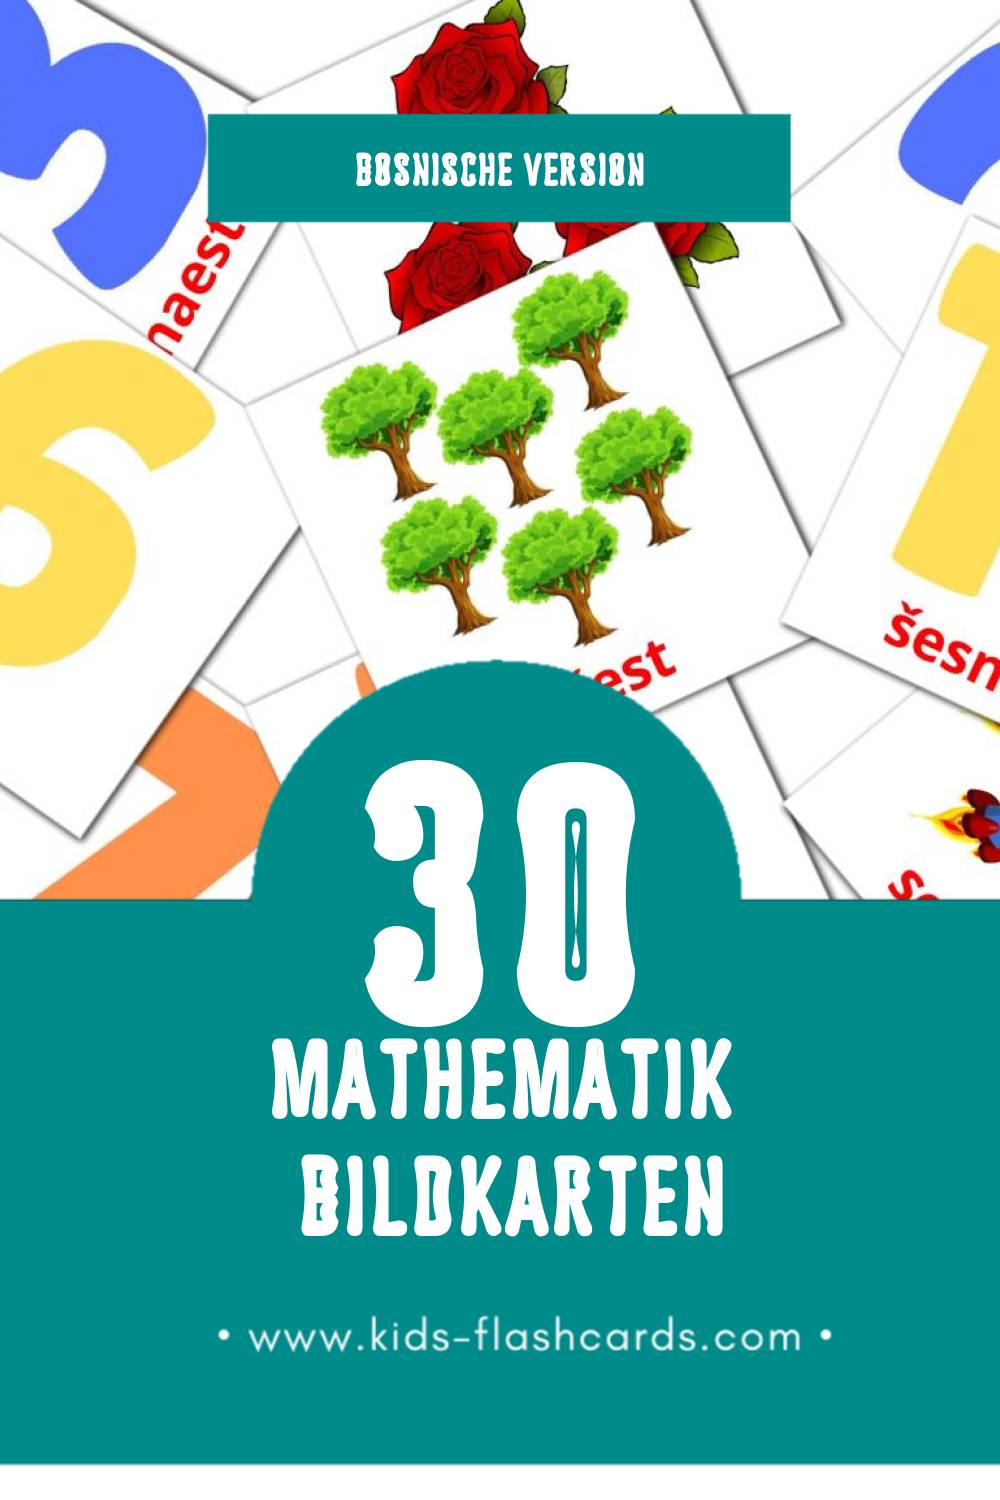 Visual Матхс Flashcards für Kleinkinder (20 Karten in Bosnisch)